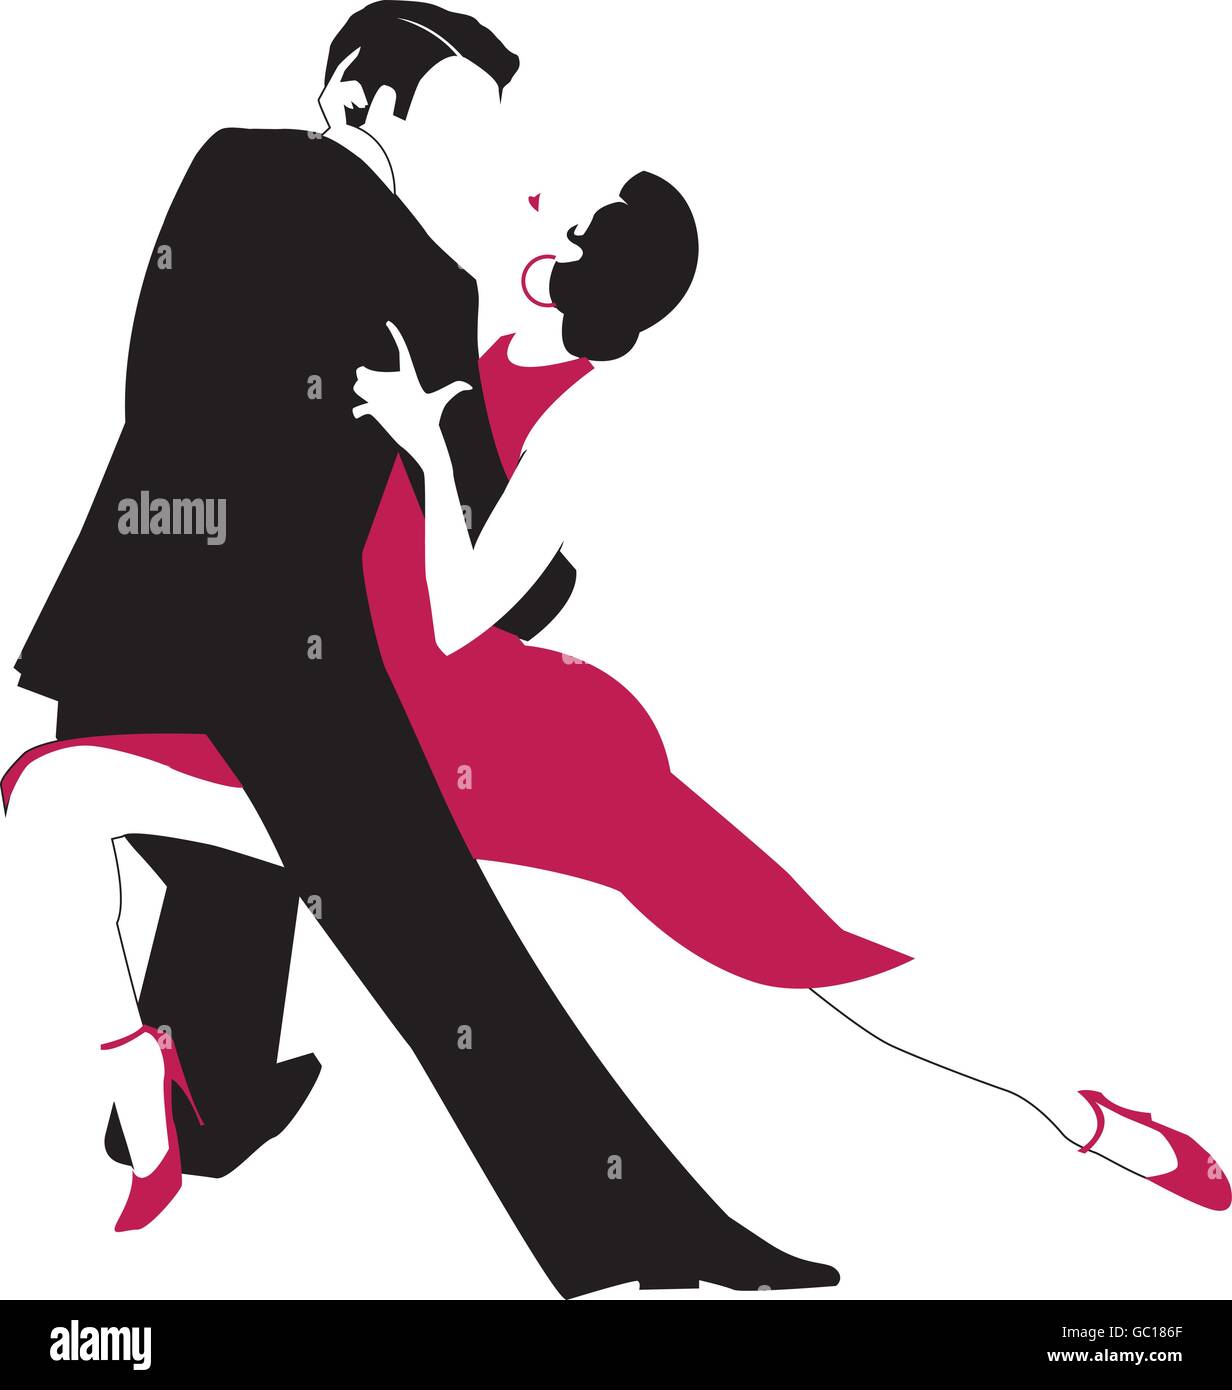 Vector illustration originale d'un couple dancing générique Le Tango Argentin dans une étreinte passionnée. Illustration de Vecteur